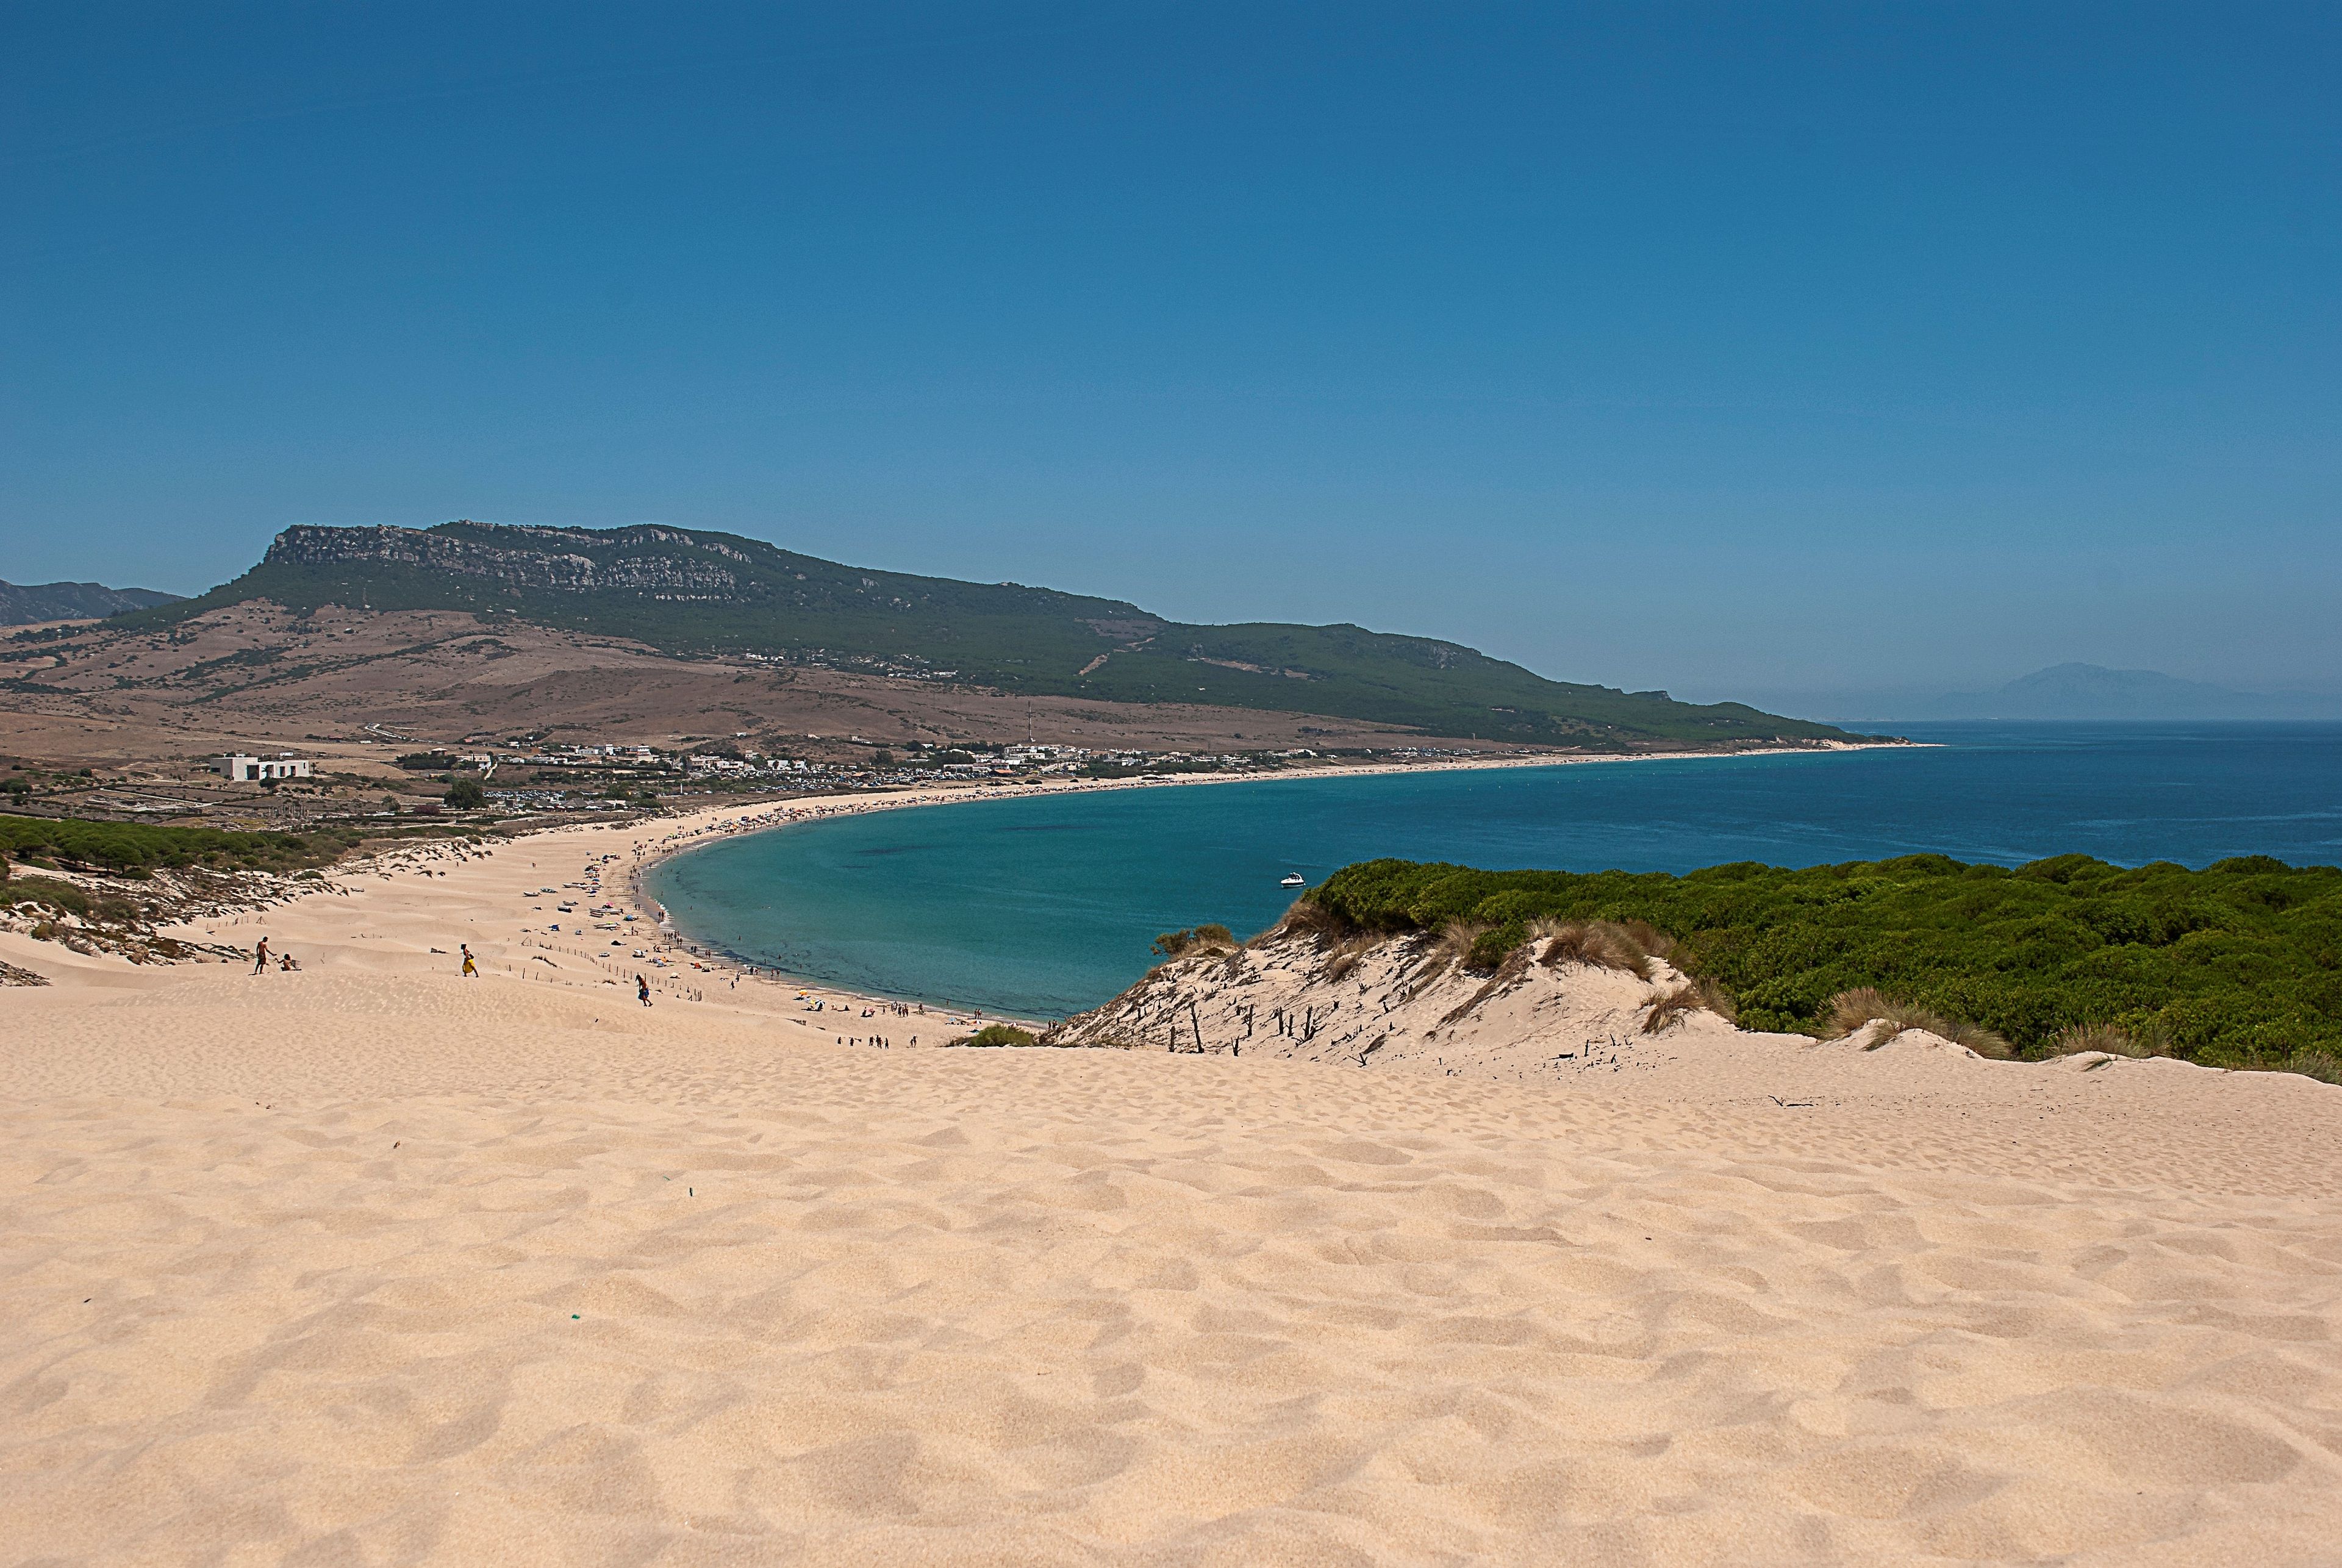 Estas son las 4 mejores playas españolas según un prestigioso ranking europeo